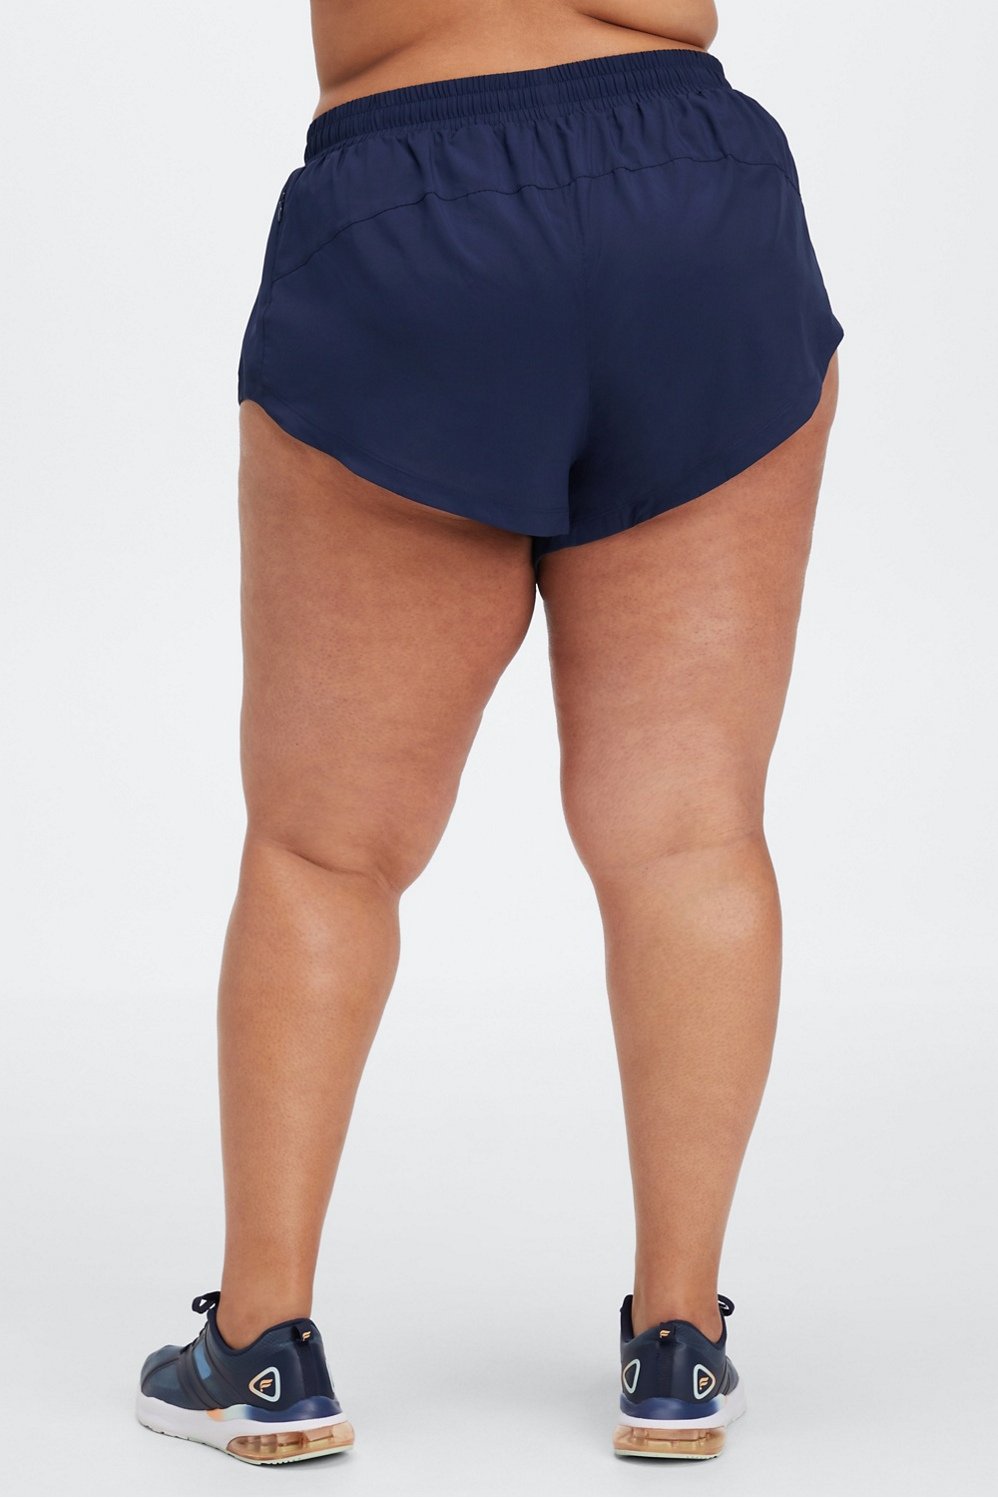 Buy Plein Sport women sportswear fit training shorts navy blue Online